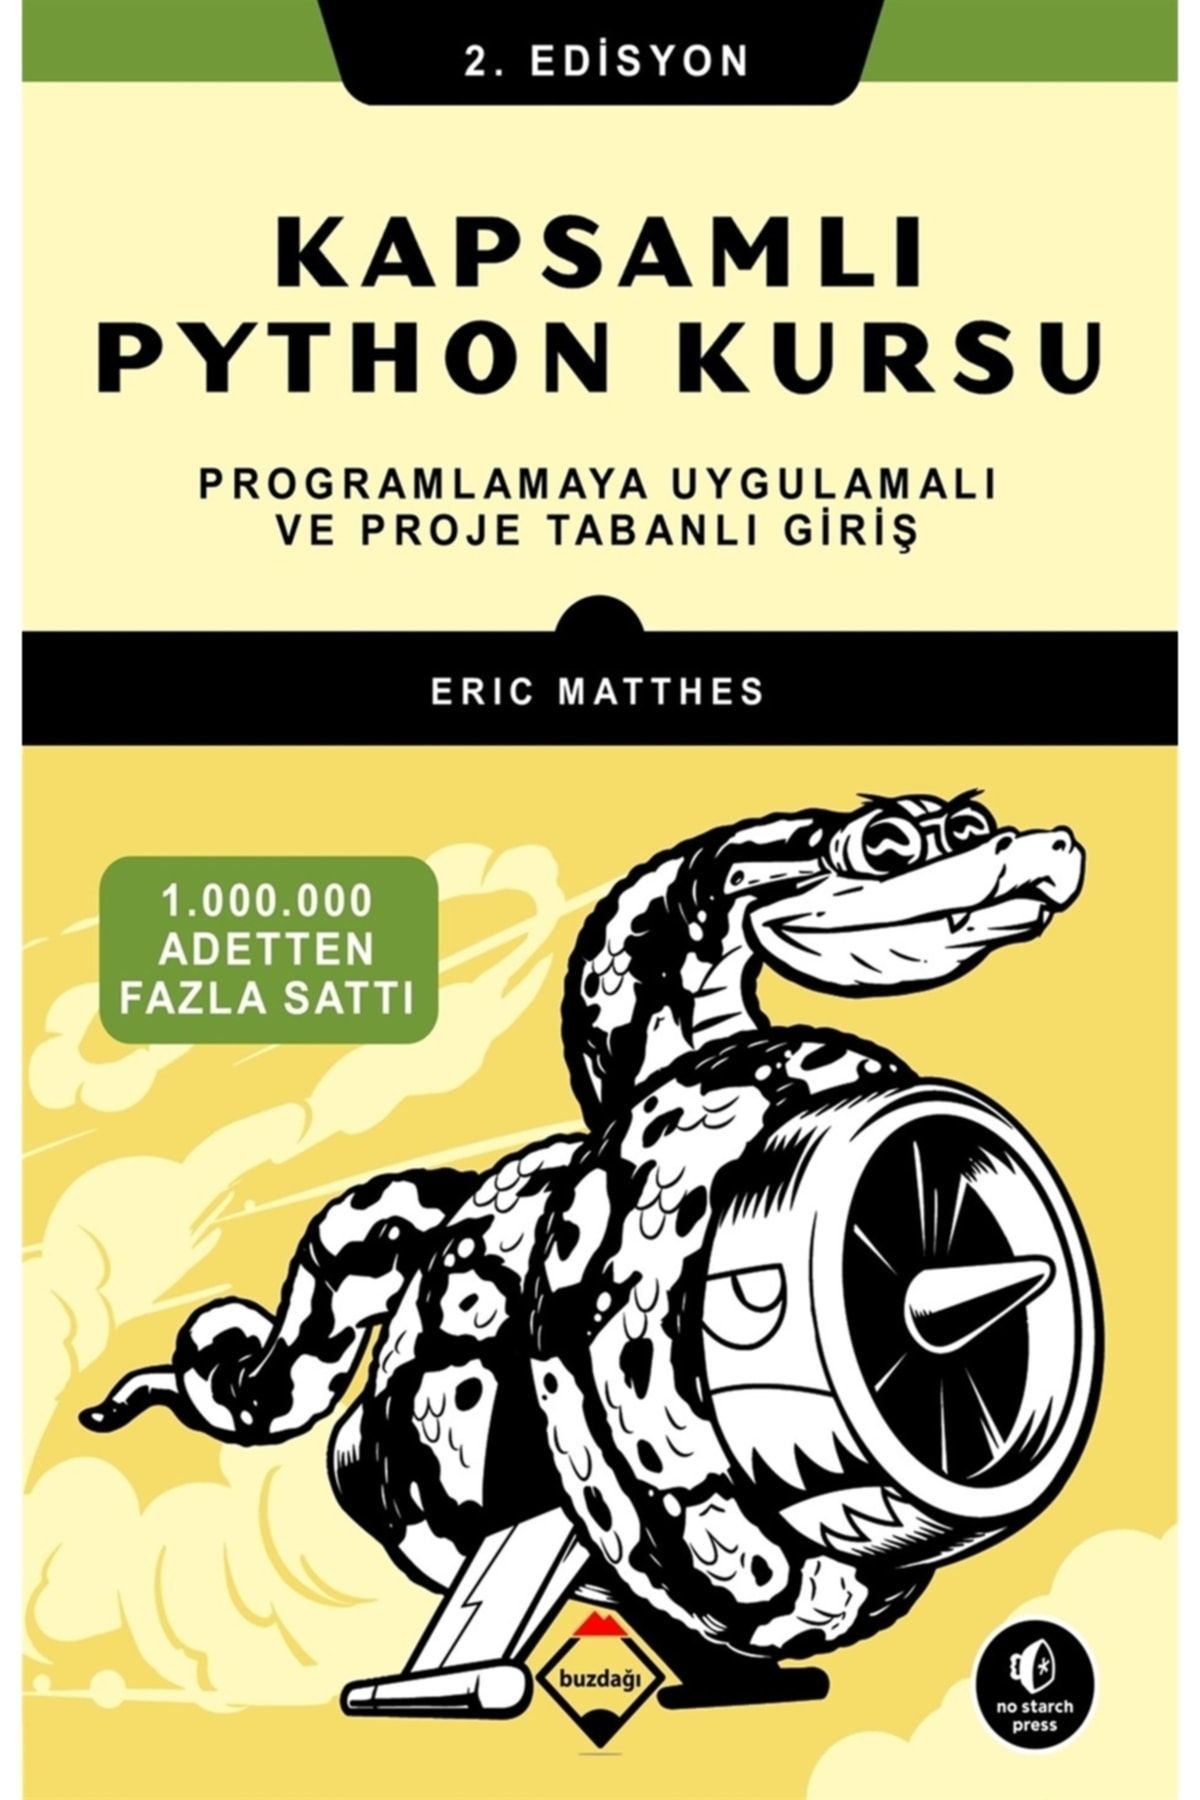 Buzdağı Yayınevi Kapsamlı Python Kursu - Programlamaya Uygulamalı Ve Proje Tabanlı Giriş 2.edisyon